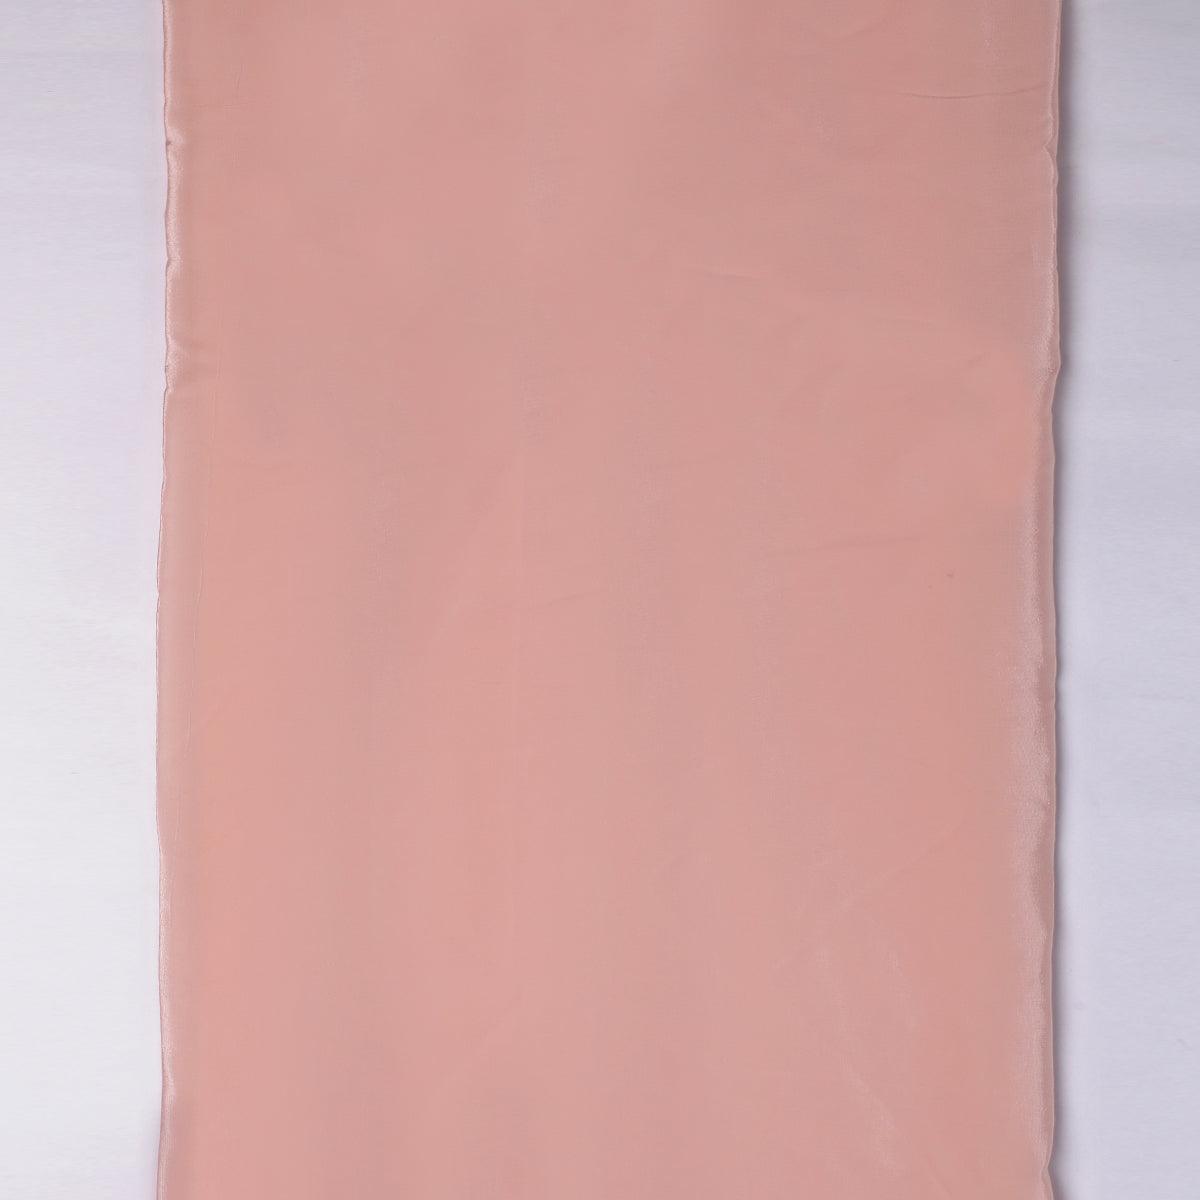 Peach Colour Pure Crepe Plain Dyed Fabric - FAB VOGUE Studio®